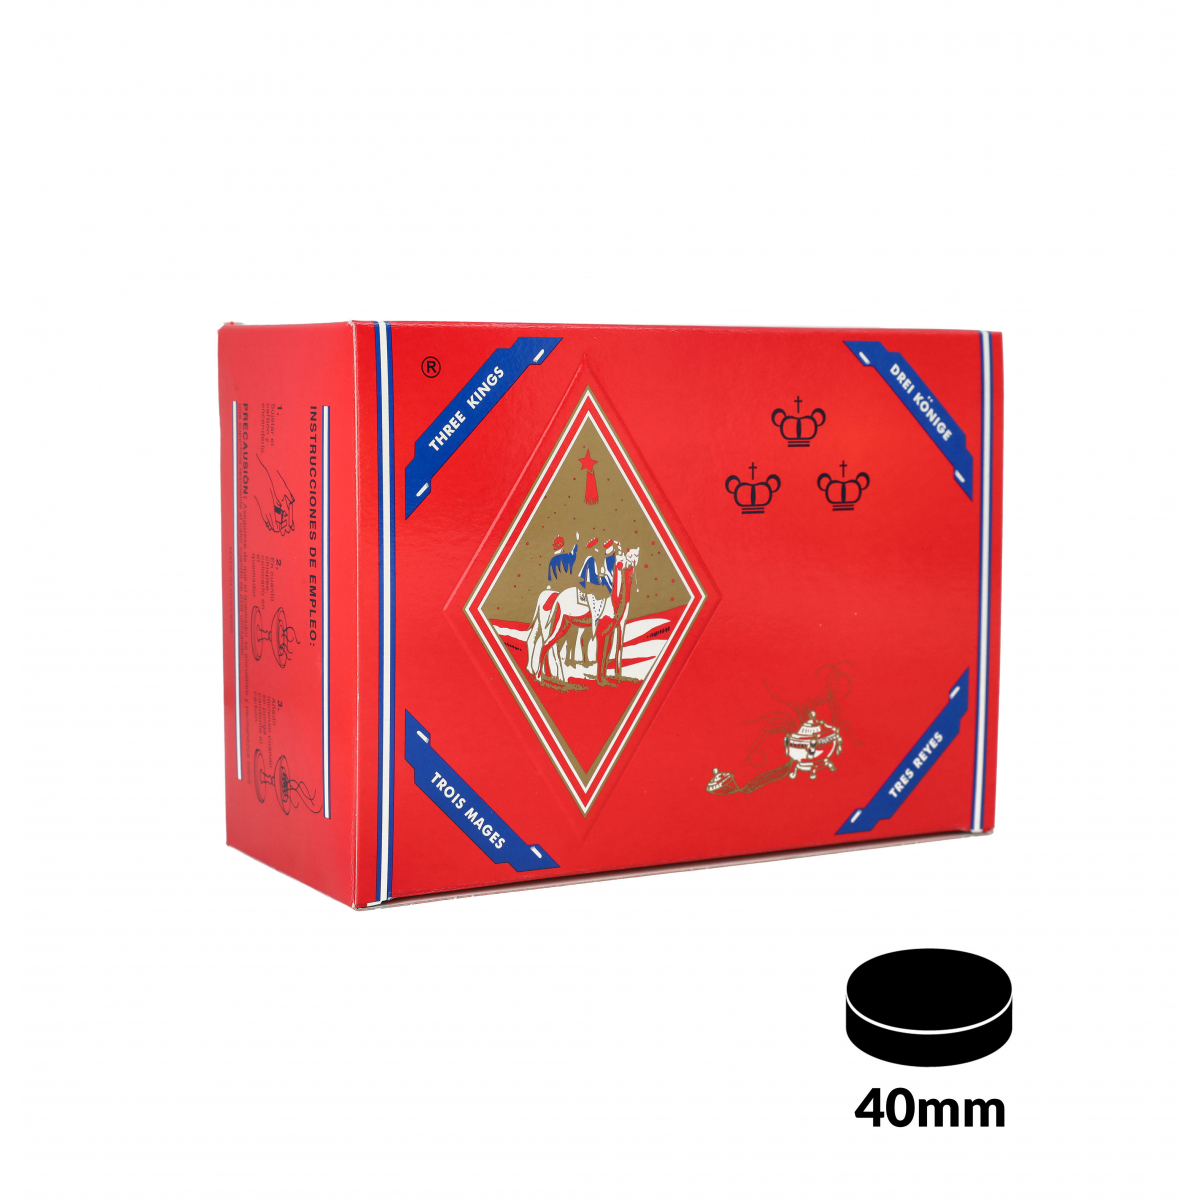 Carbones THREE KINGS XL 40mm, caja de 100: Comprar online - El Badia